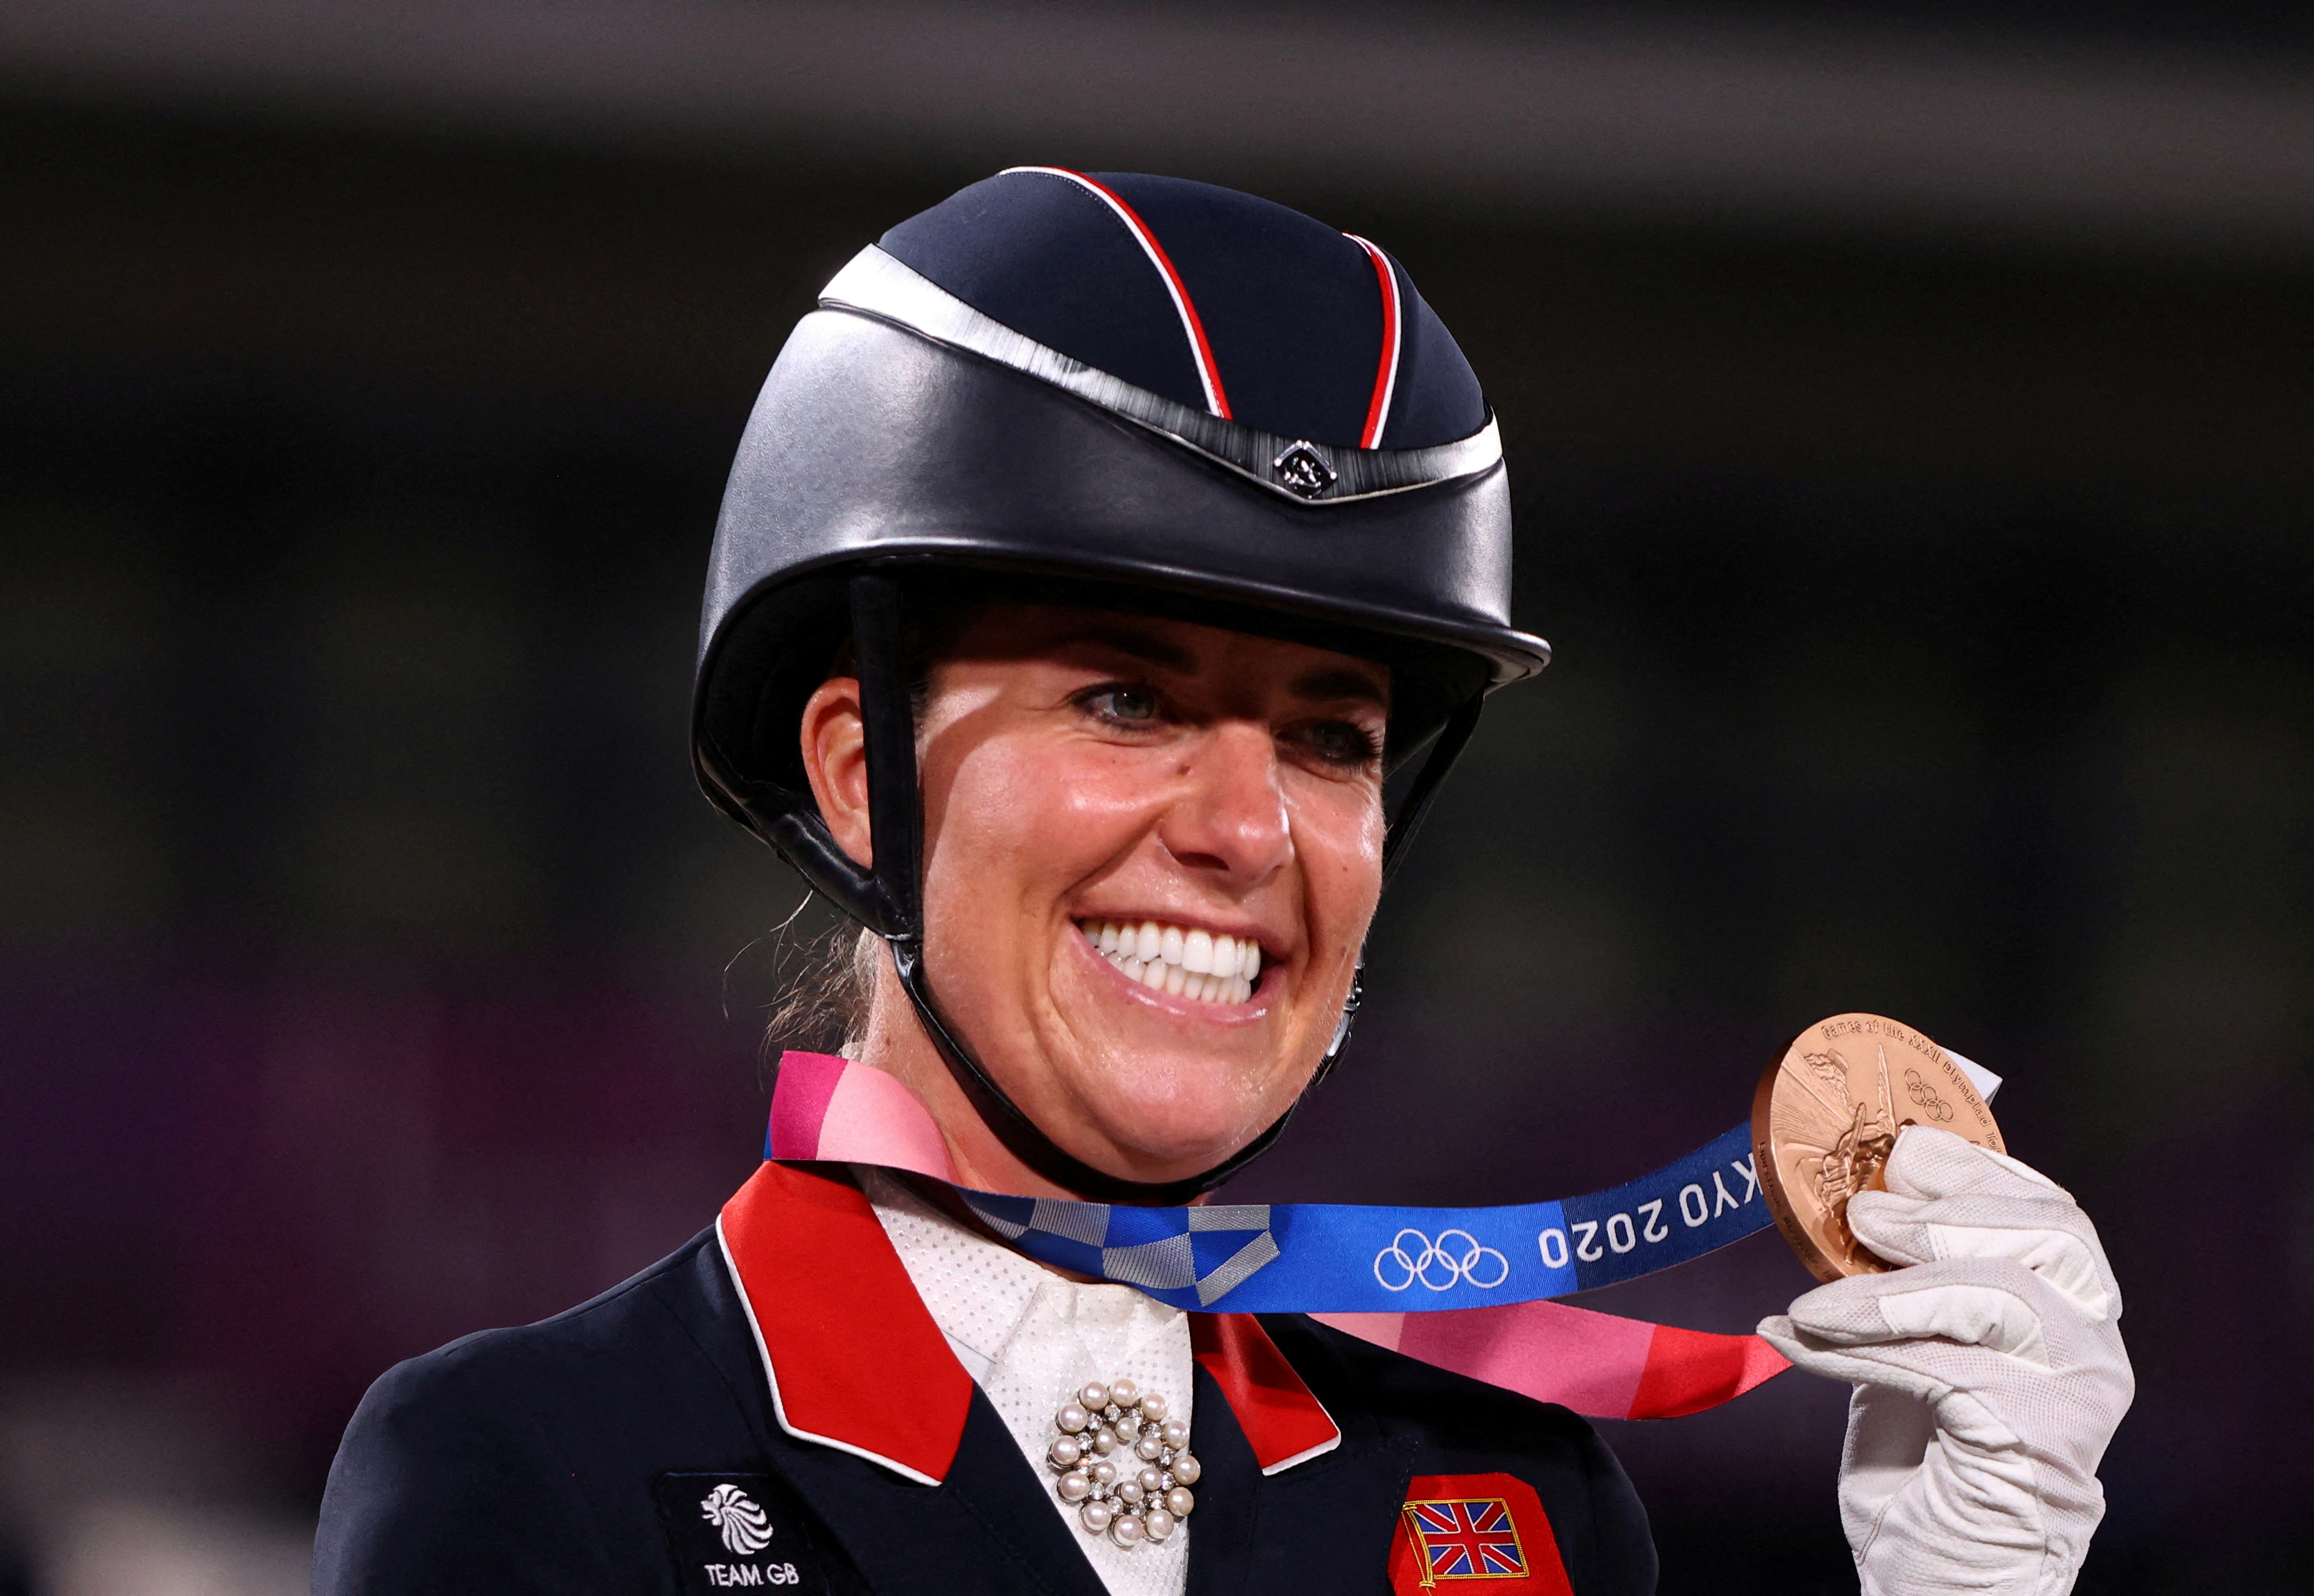 La amazona de doma es la atleta olímpica femenina más condecorada del equipo británico con seis medallas.